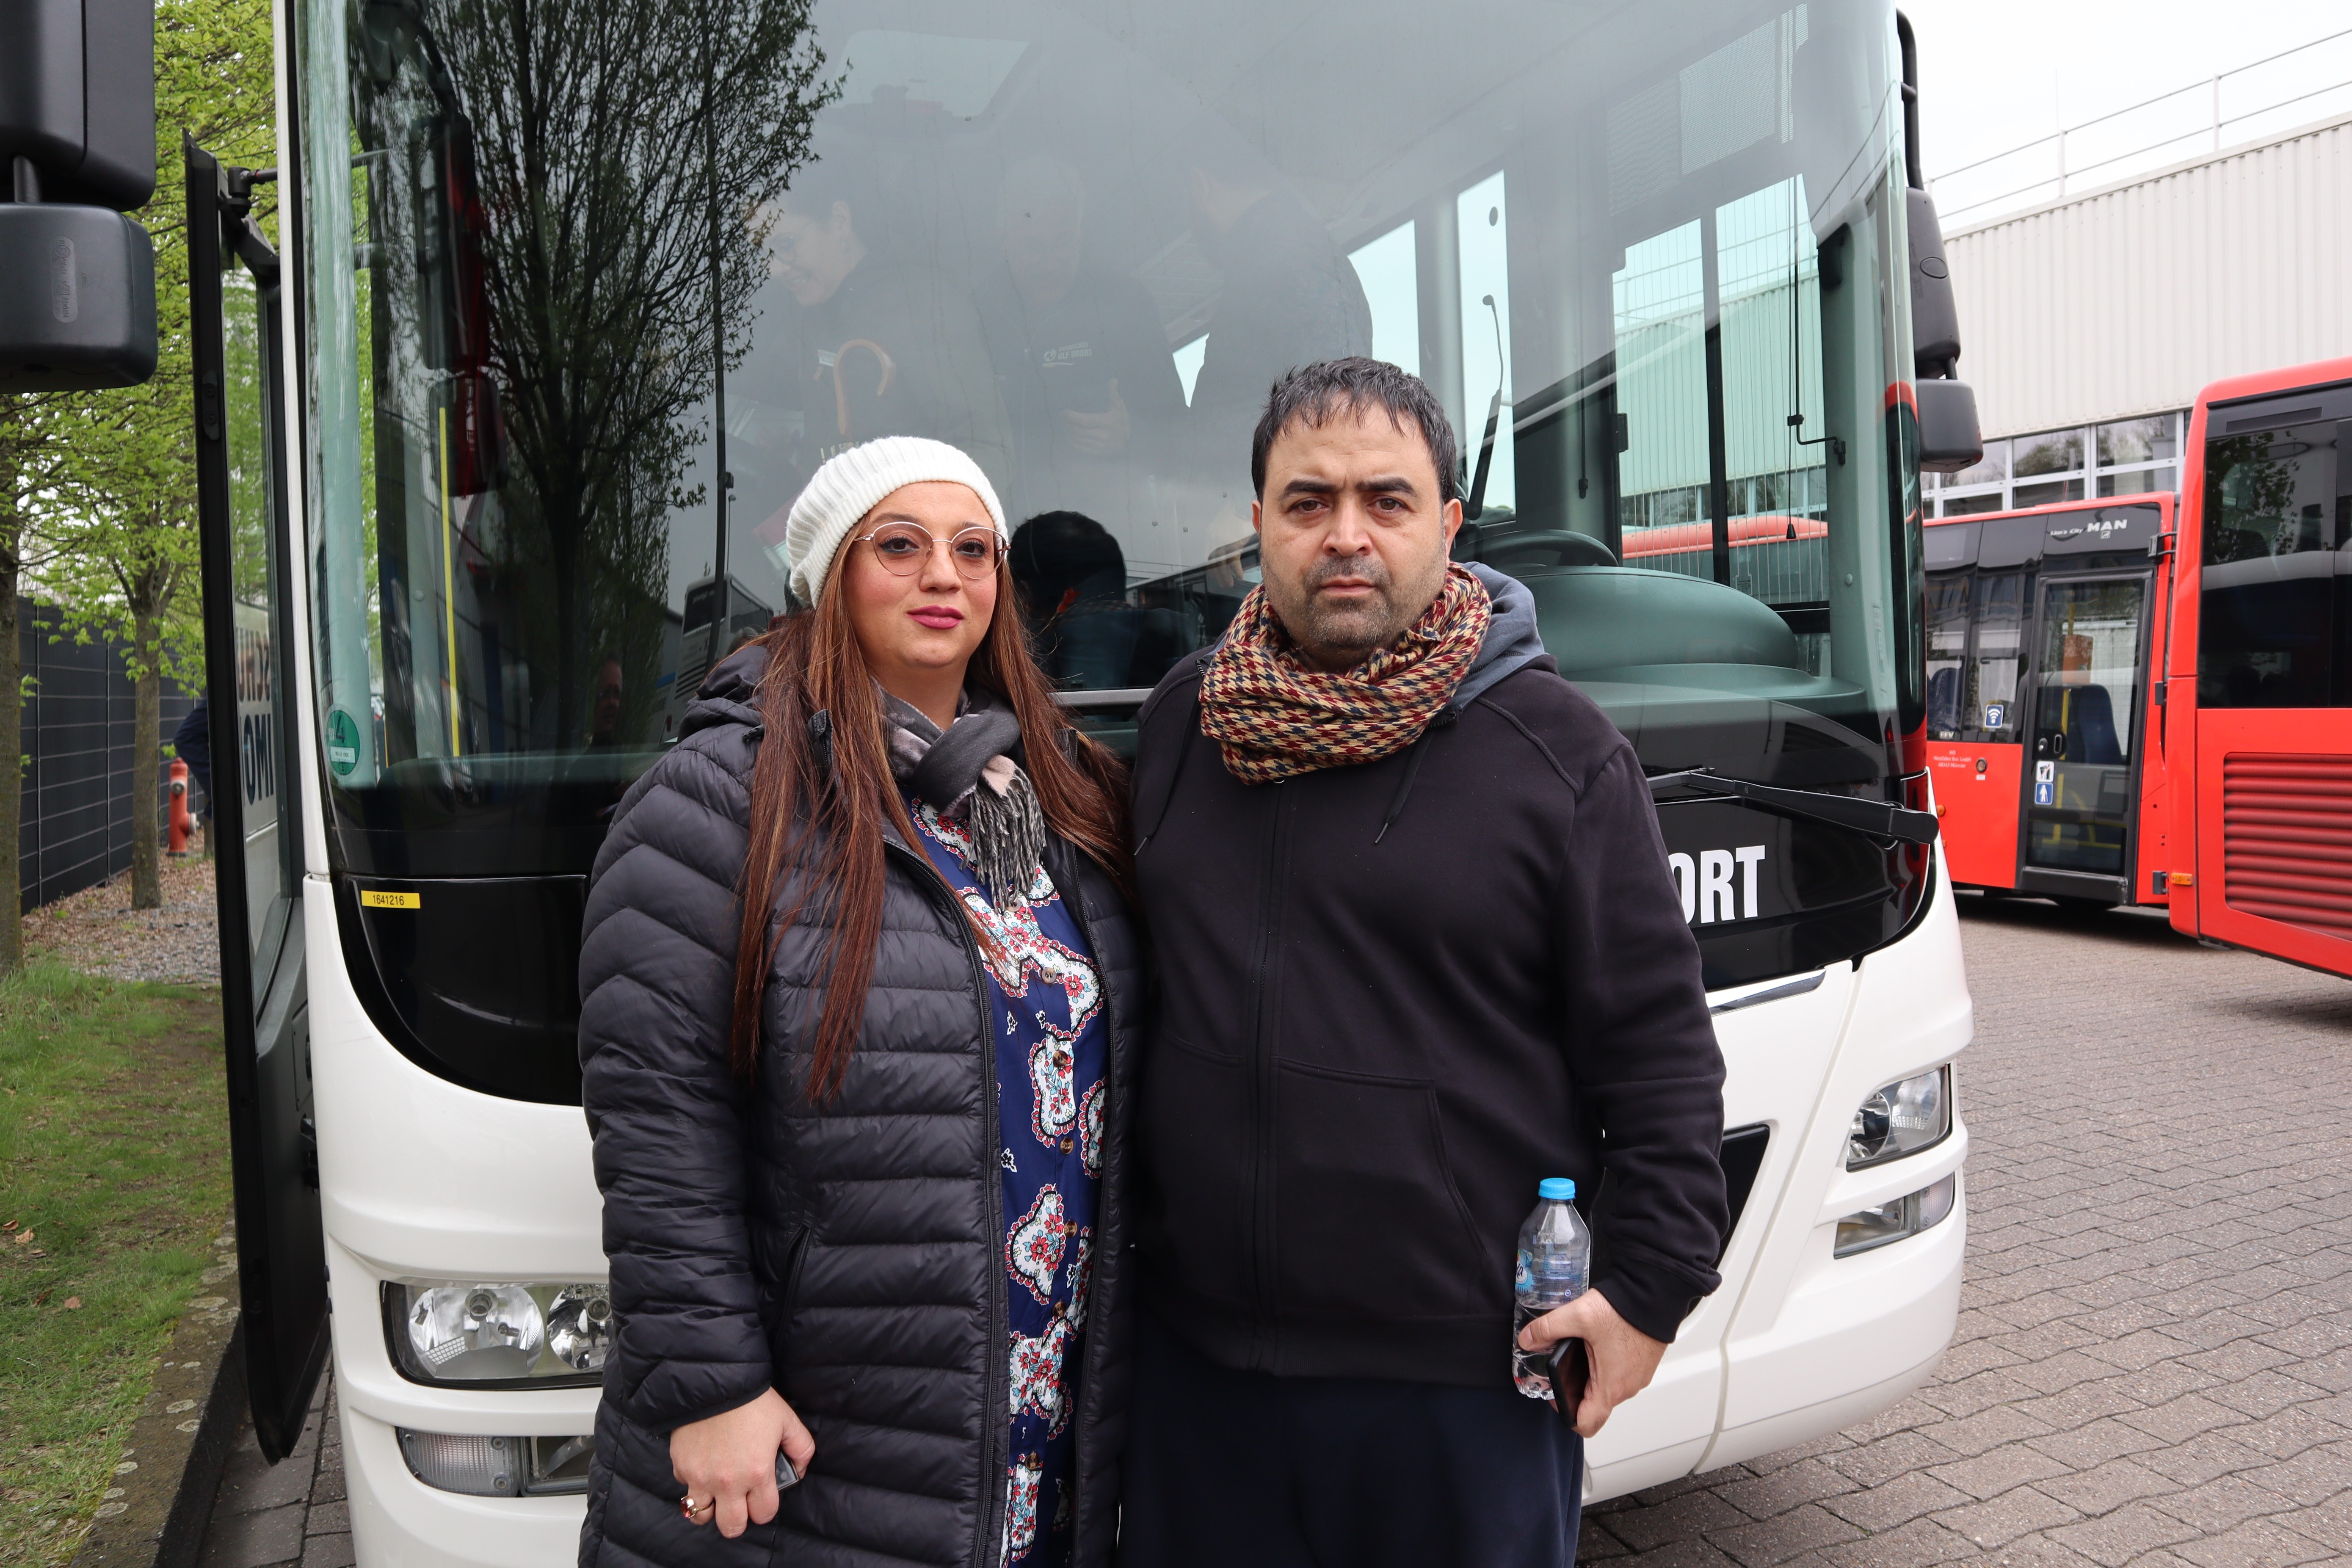 Diana Dorgham und Zoulfekar Dergham möchten gerne Busfahrer werden. Sie nutzten den Aktionstag, um sich zu informieren und das Fahren des 12 Meter langen Fahrzeugs auszuprobieren.